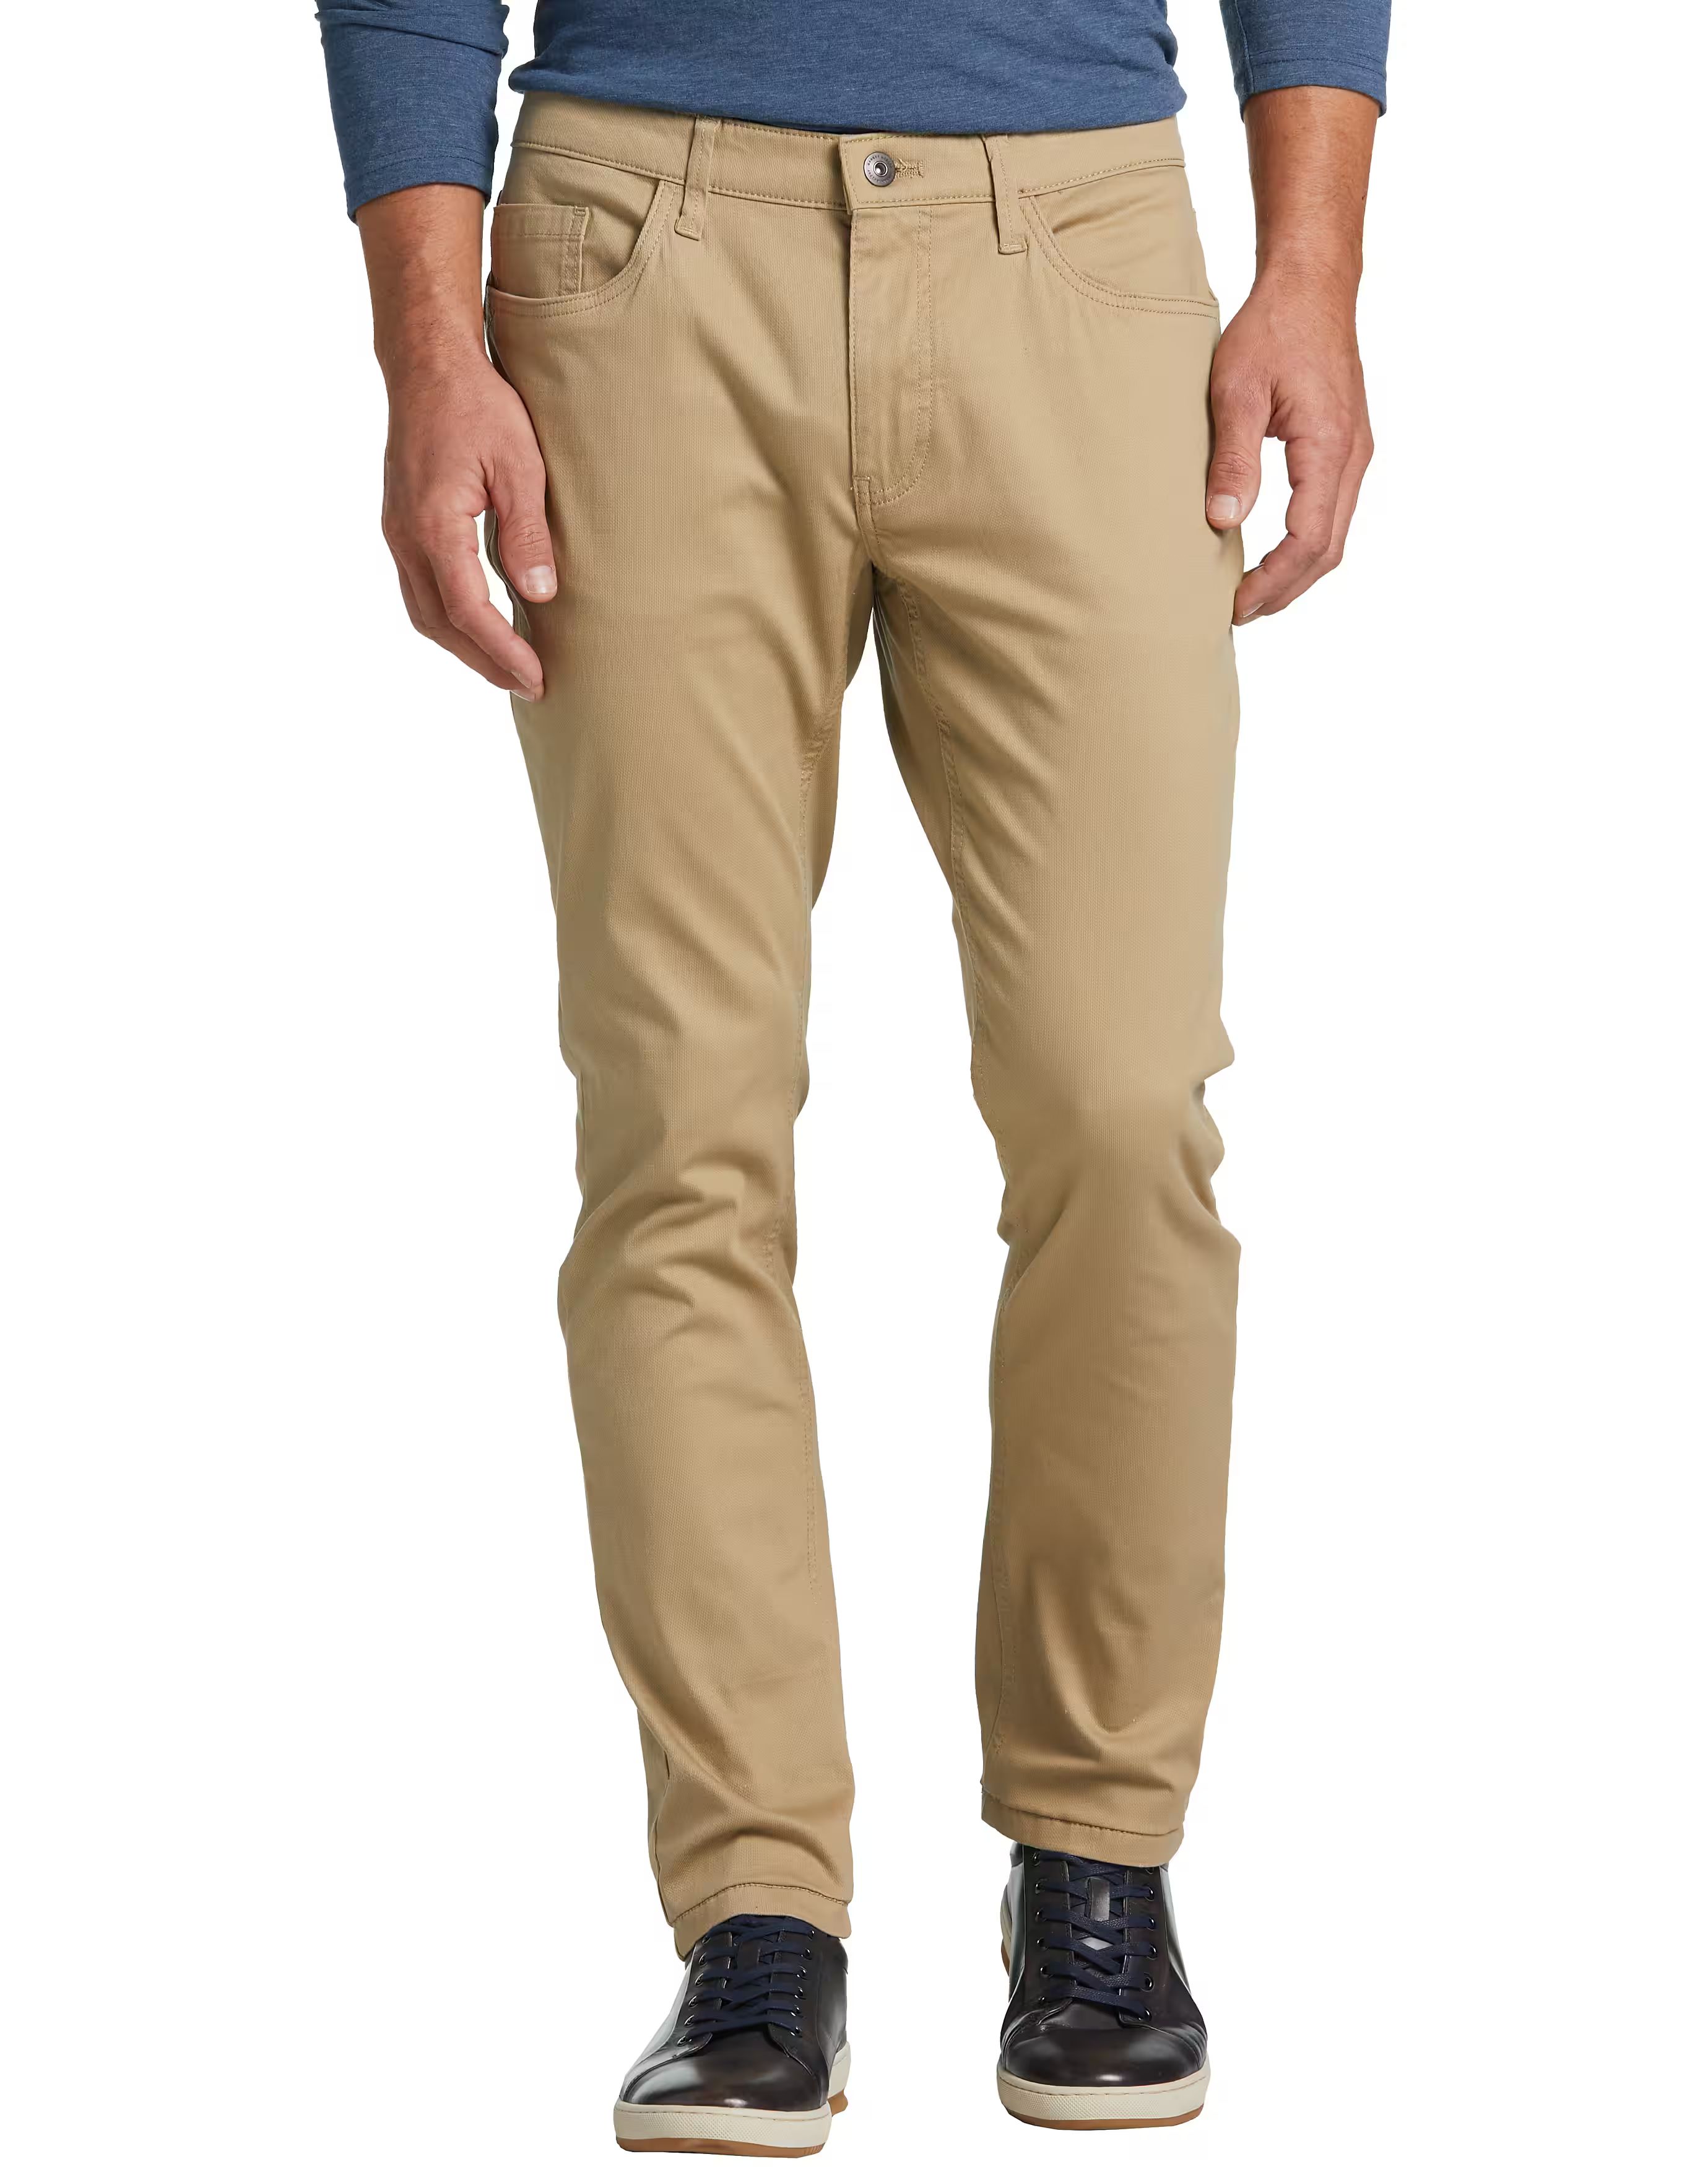 Joseph Abboud Bedford Slim Fit Five-Pocket Corduroy Pant, Tan | The Men's Wearhouse